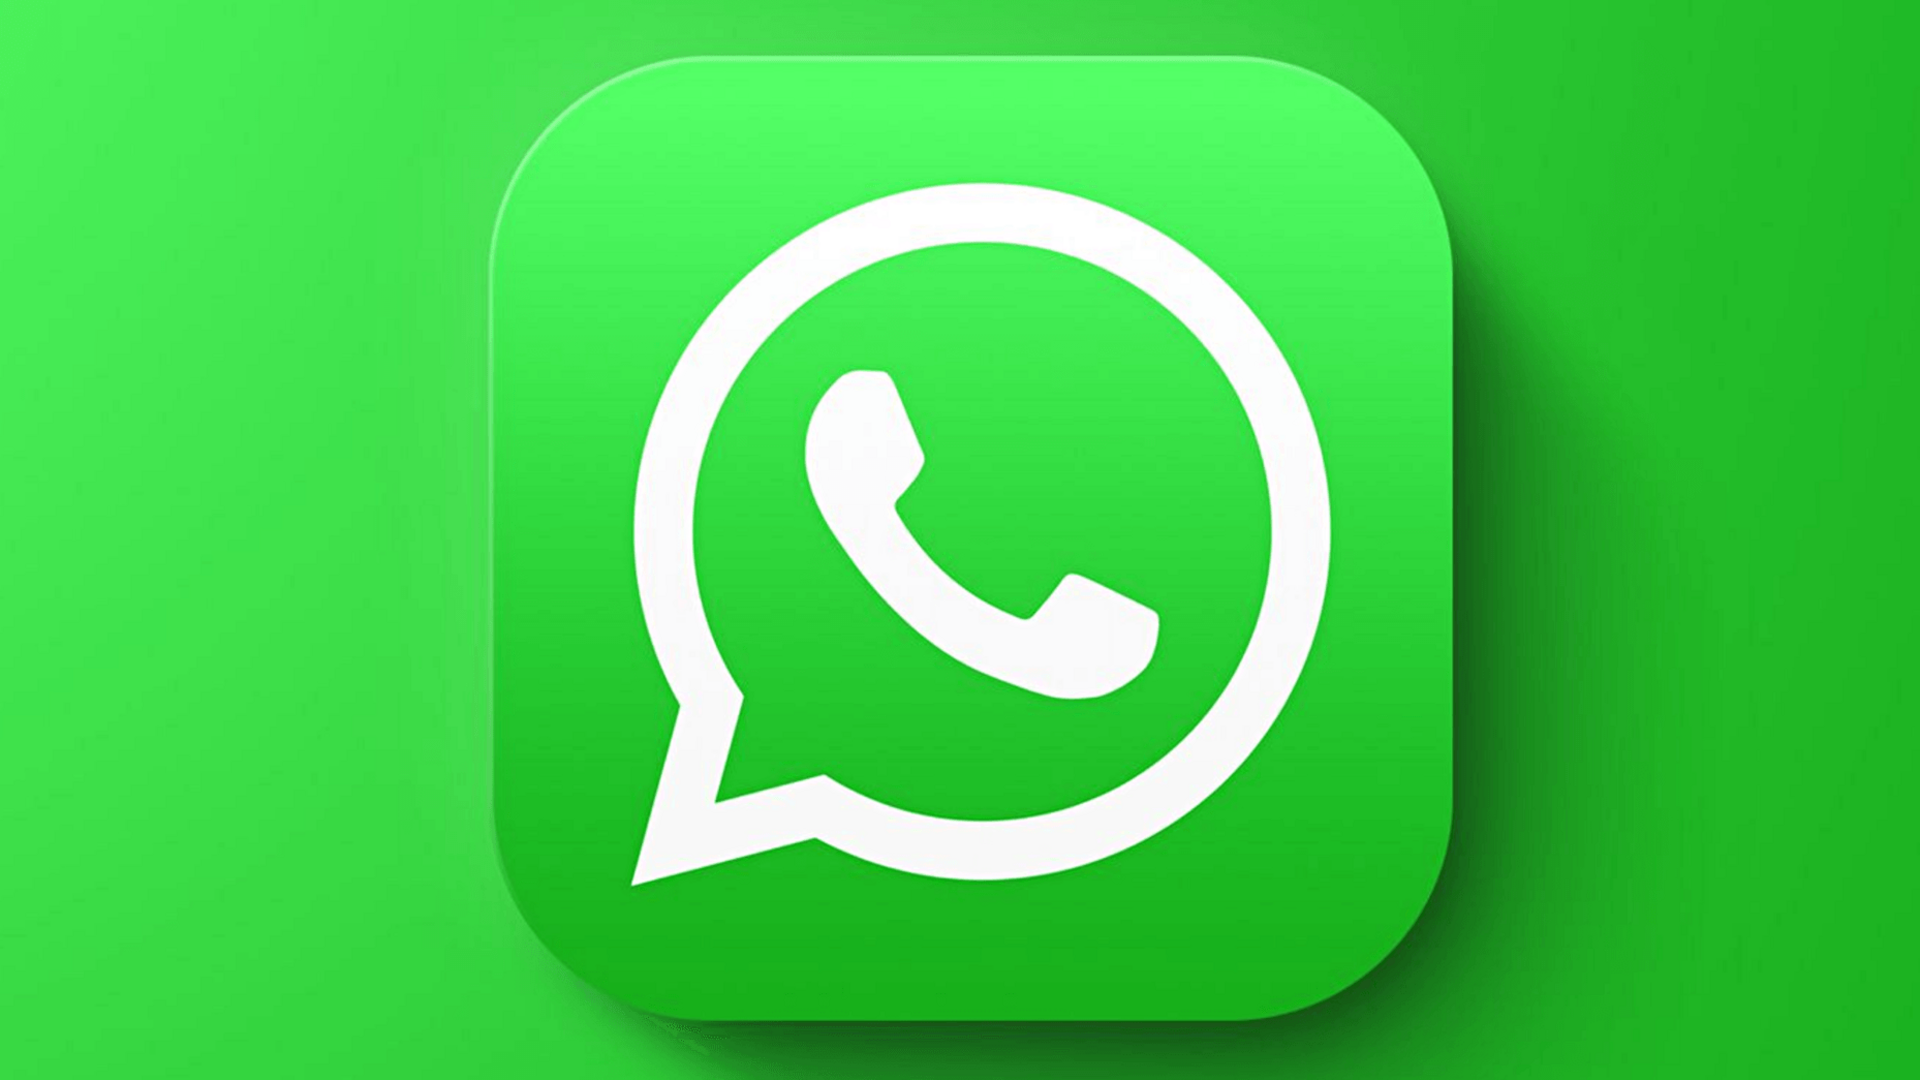 व्हाट्सऐप ने भारत में लगभग 46 लाख अकाउंट्स पर लगाया प्रतिबंध, जानिए वजह 